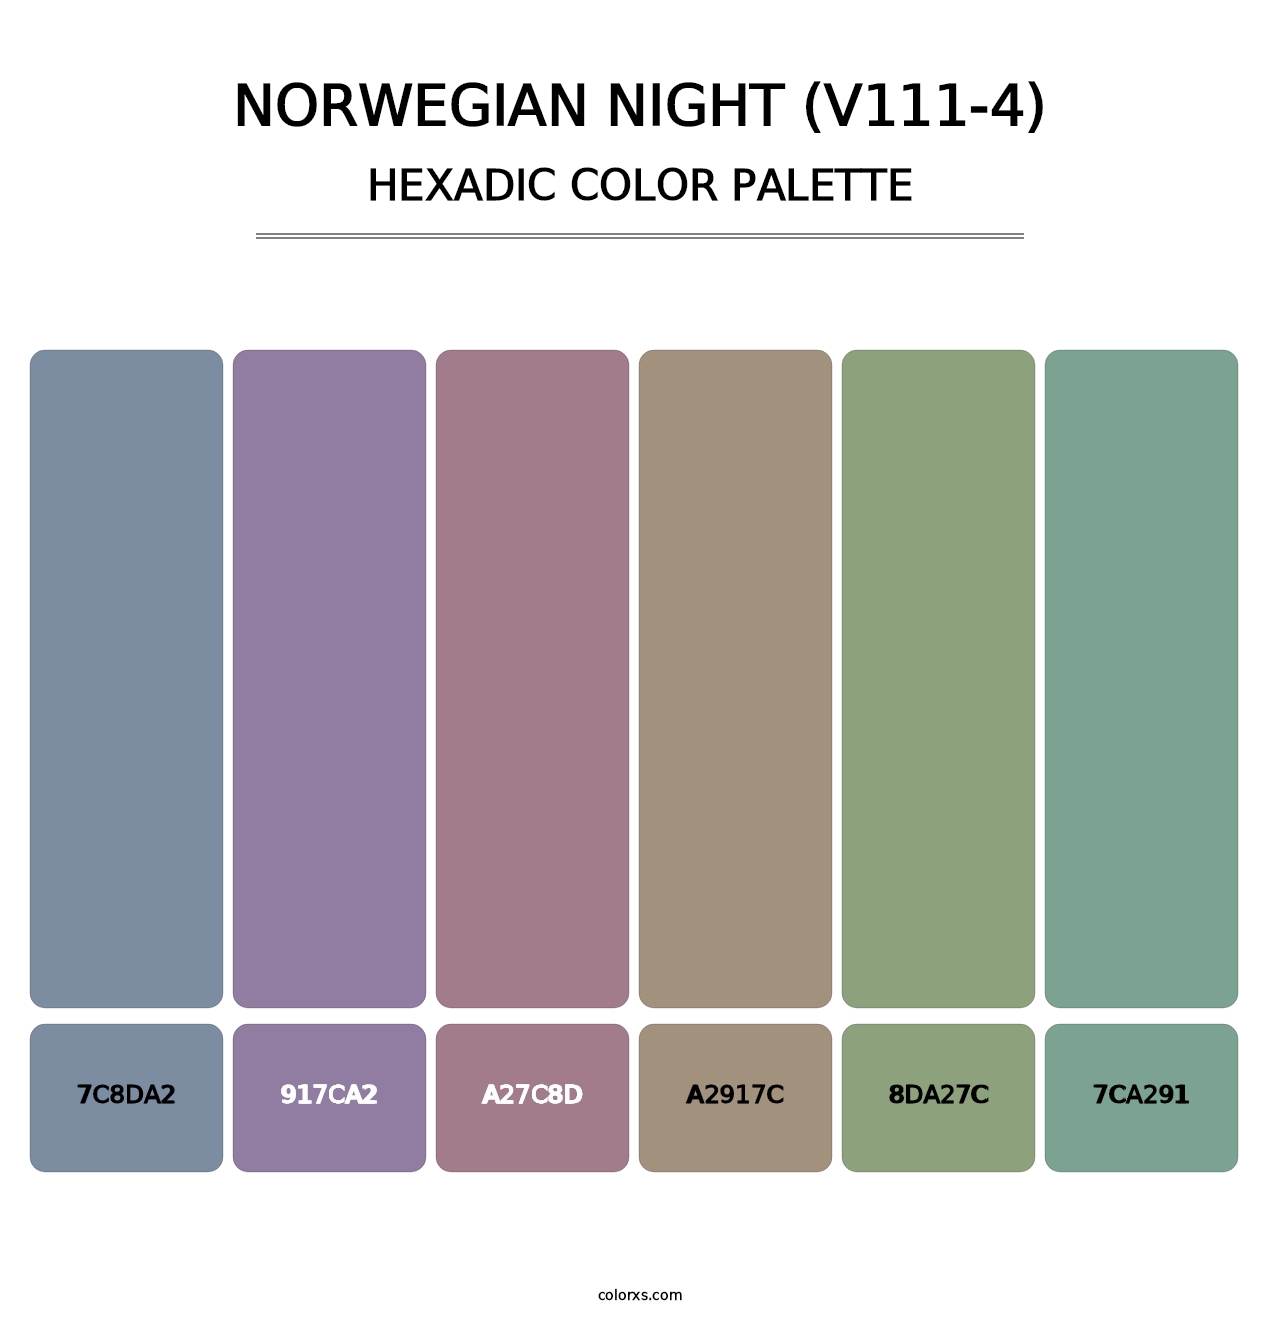 Norwegian Night (V111-4) - Hexadic Color Palette